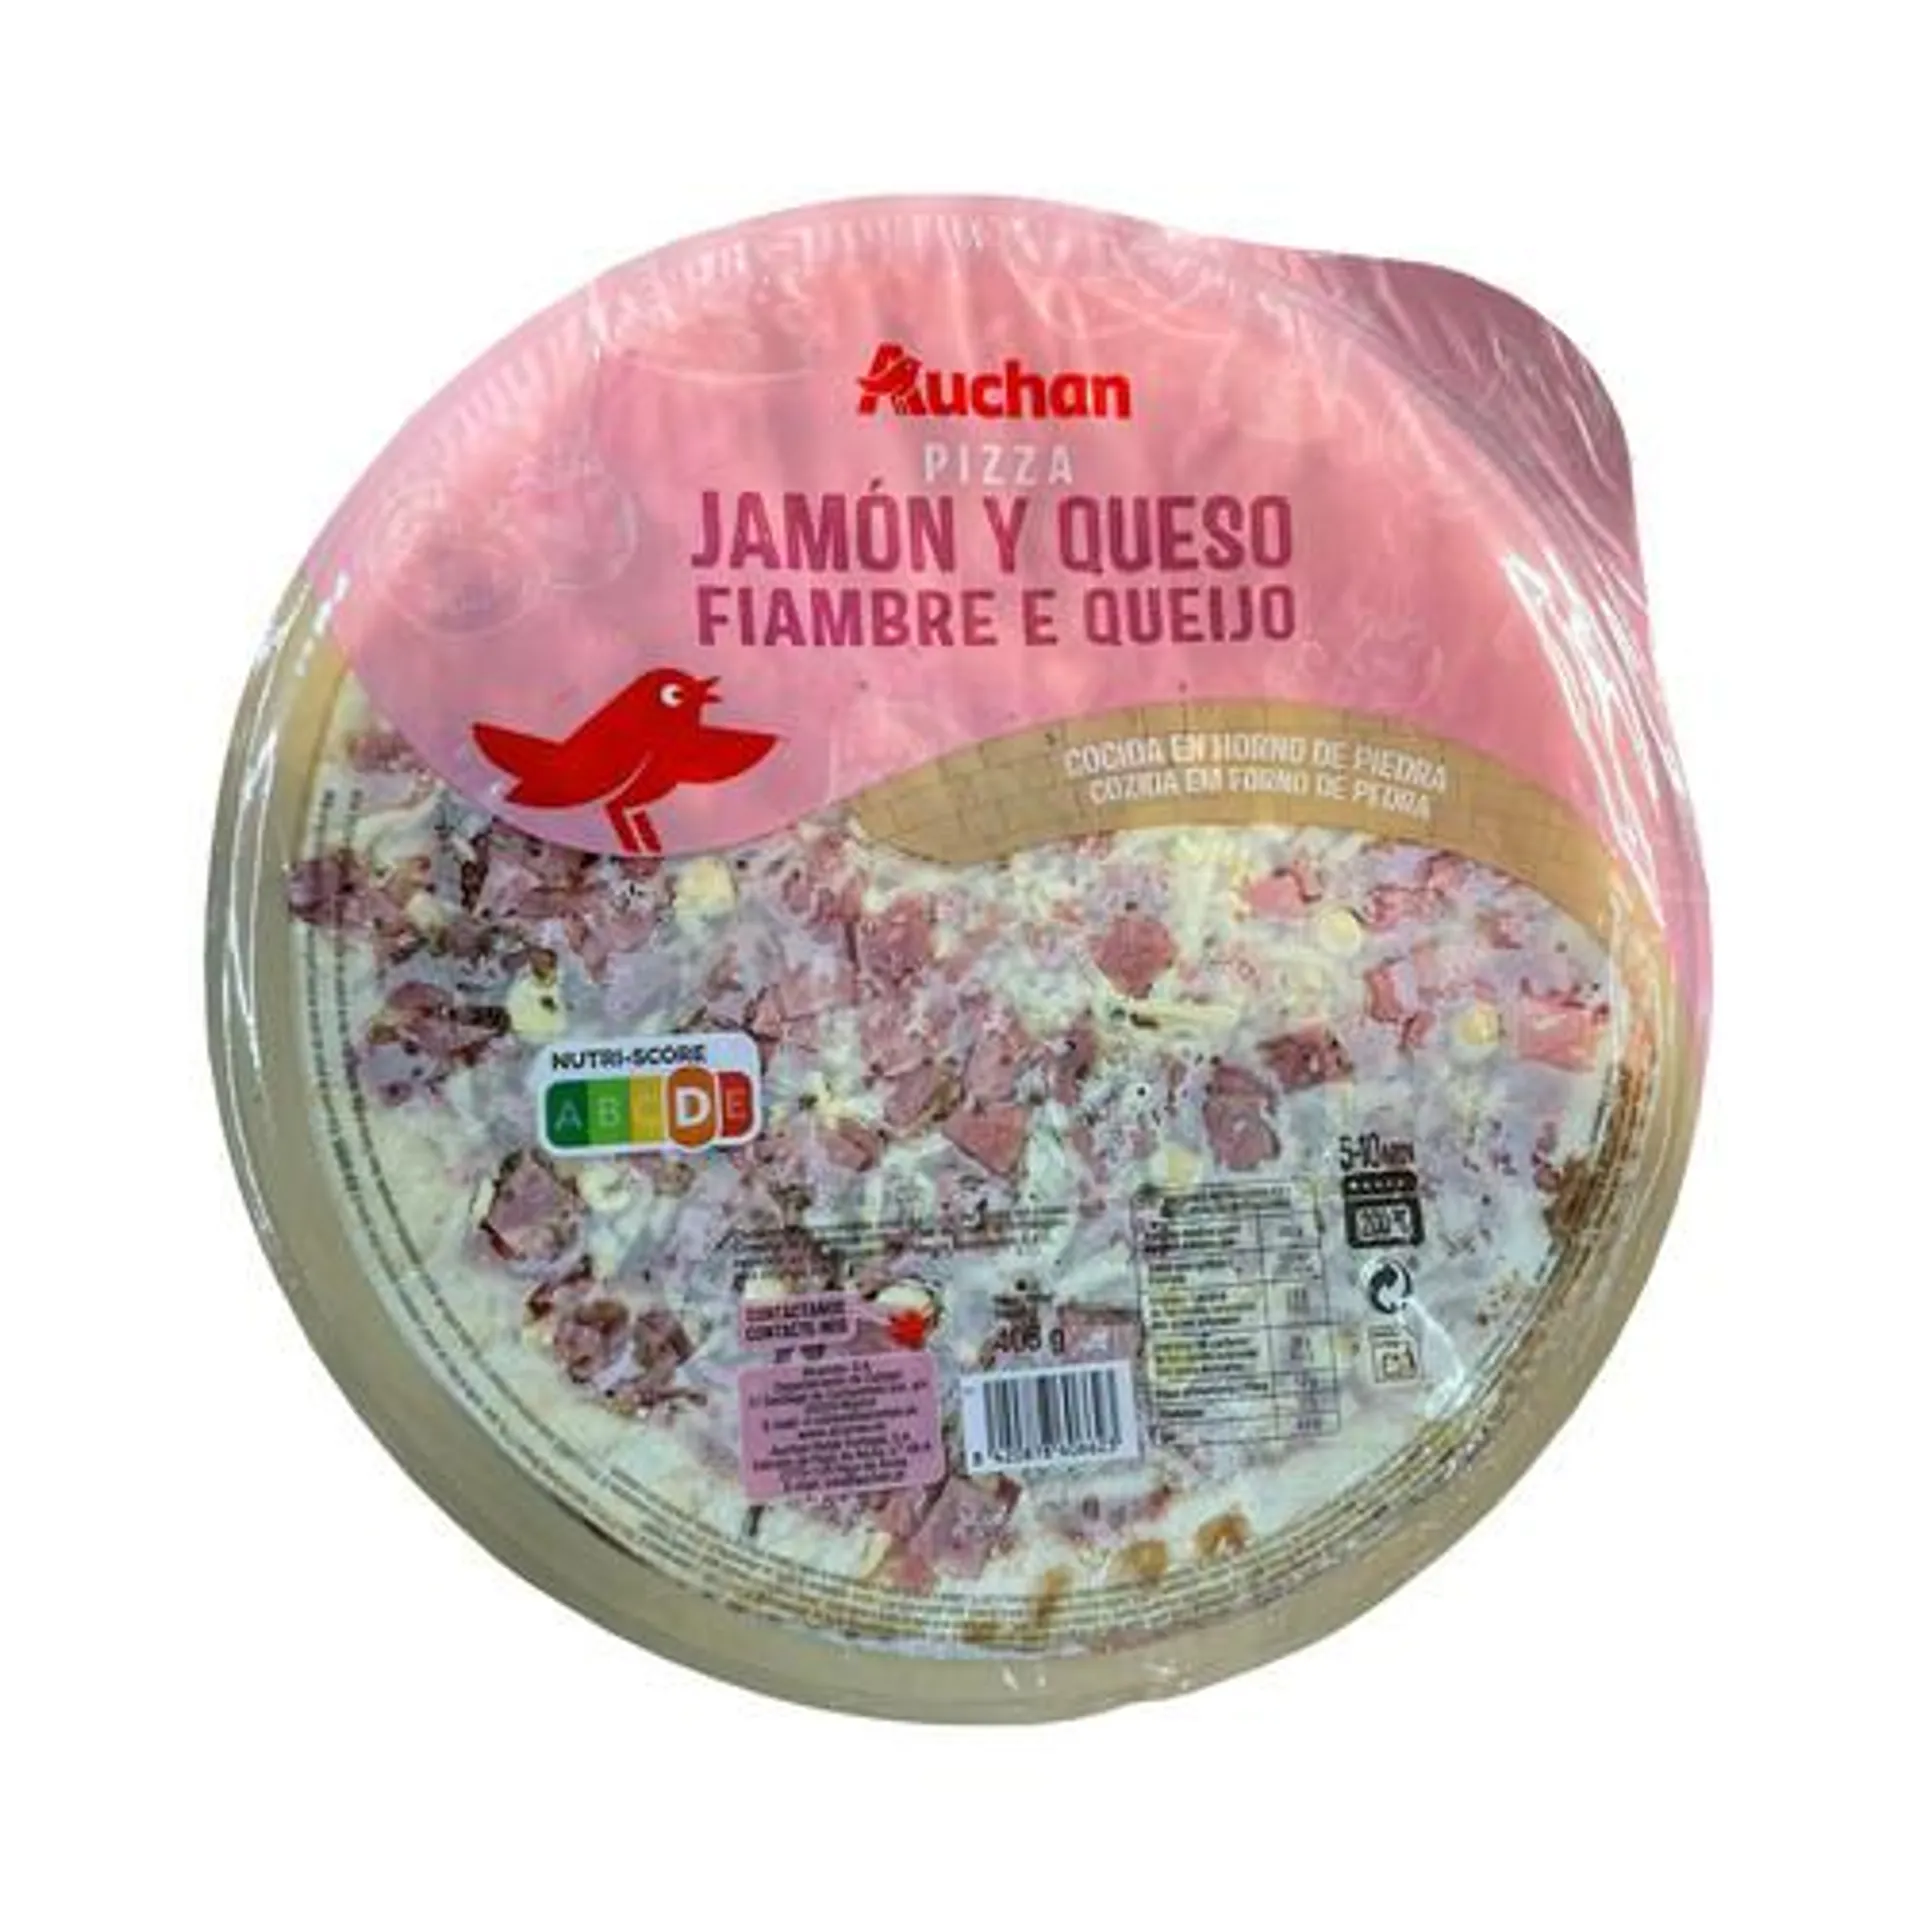 PRODUCTO ALCAMPO Pizza de jamón y queso cocida en horno de piedra PRODUCTO ALCAMPO 405 g.